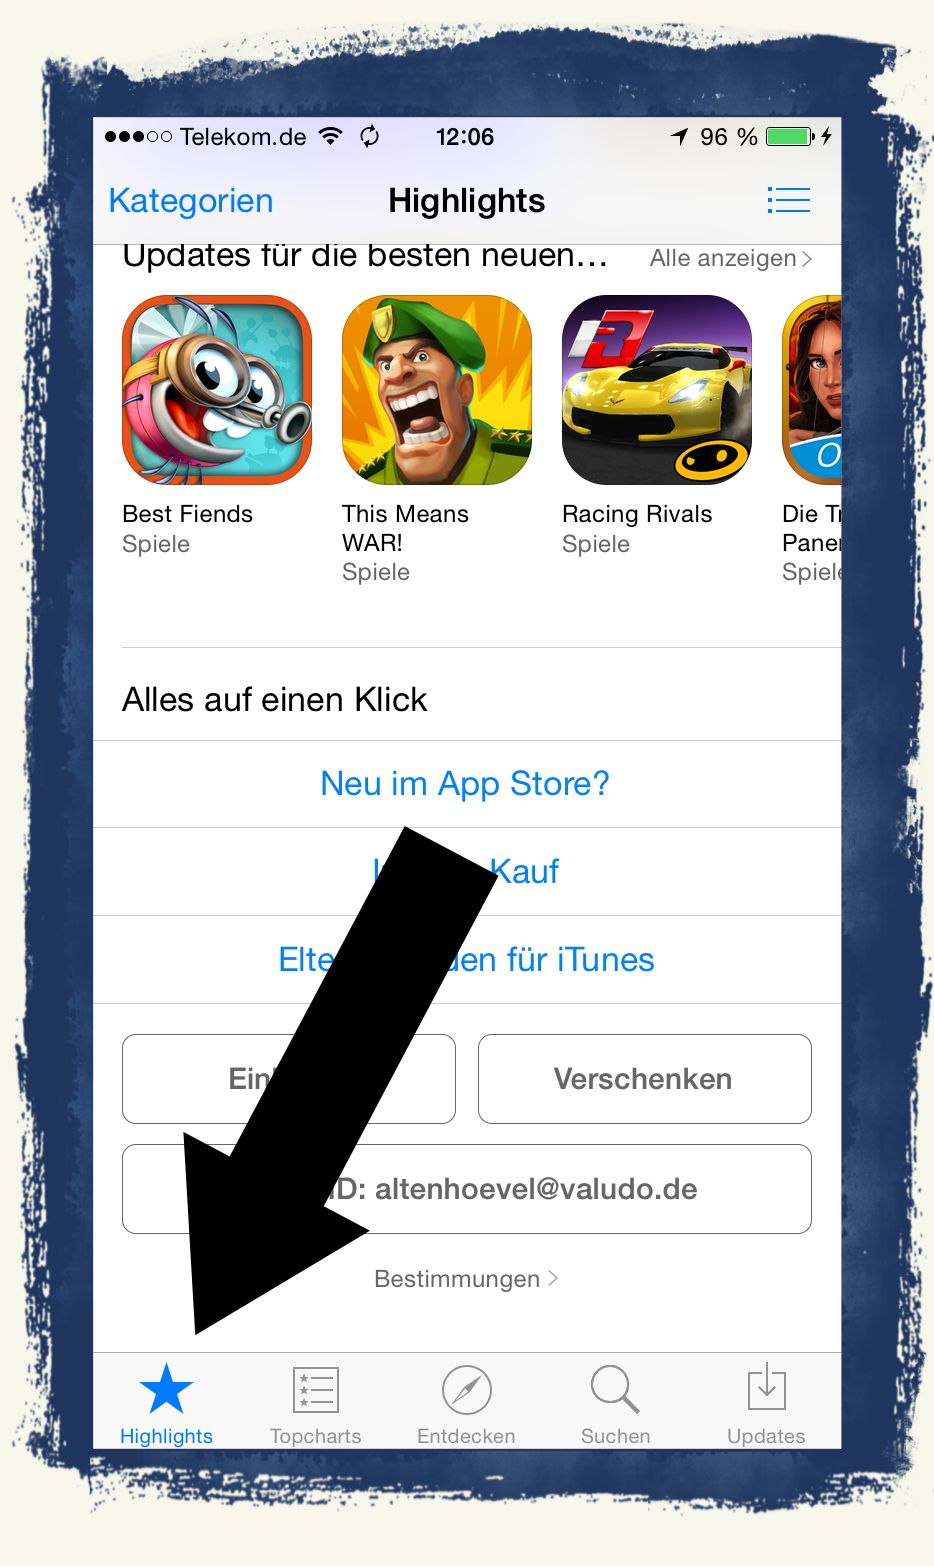 iTunes Geschenkkarten Karten App Store Book Mac Apple Apps Musik Bücher Buch iTunes Store App Store iBooks Store Mac App Store PayPal Kreditkarte Rabatt günstiger 2